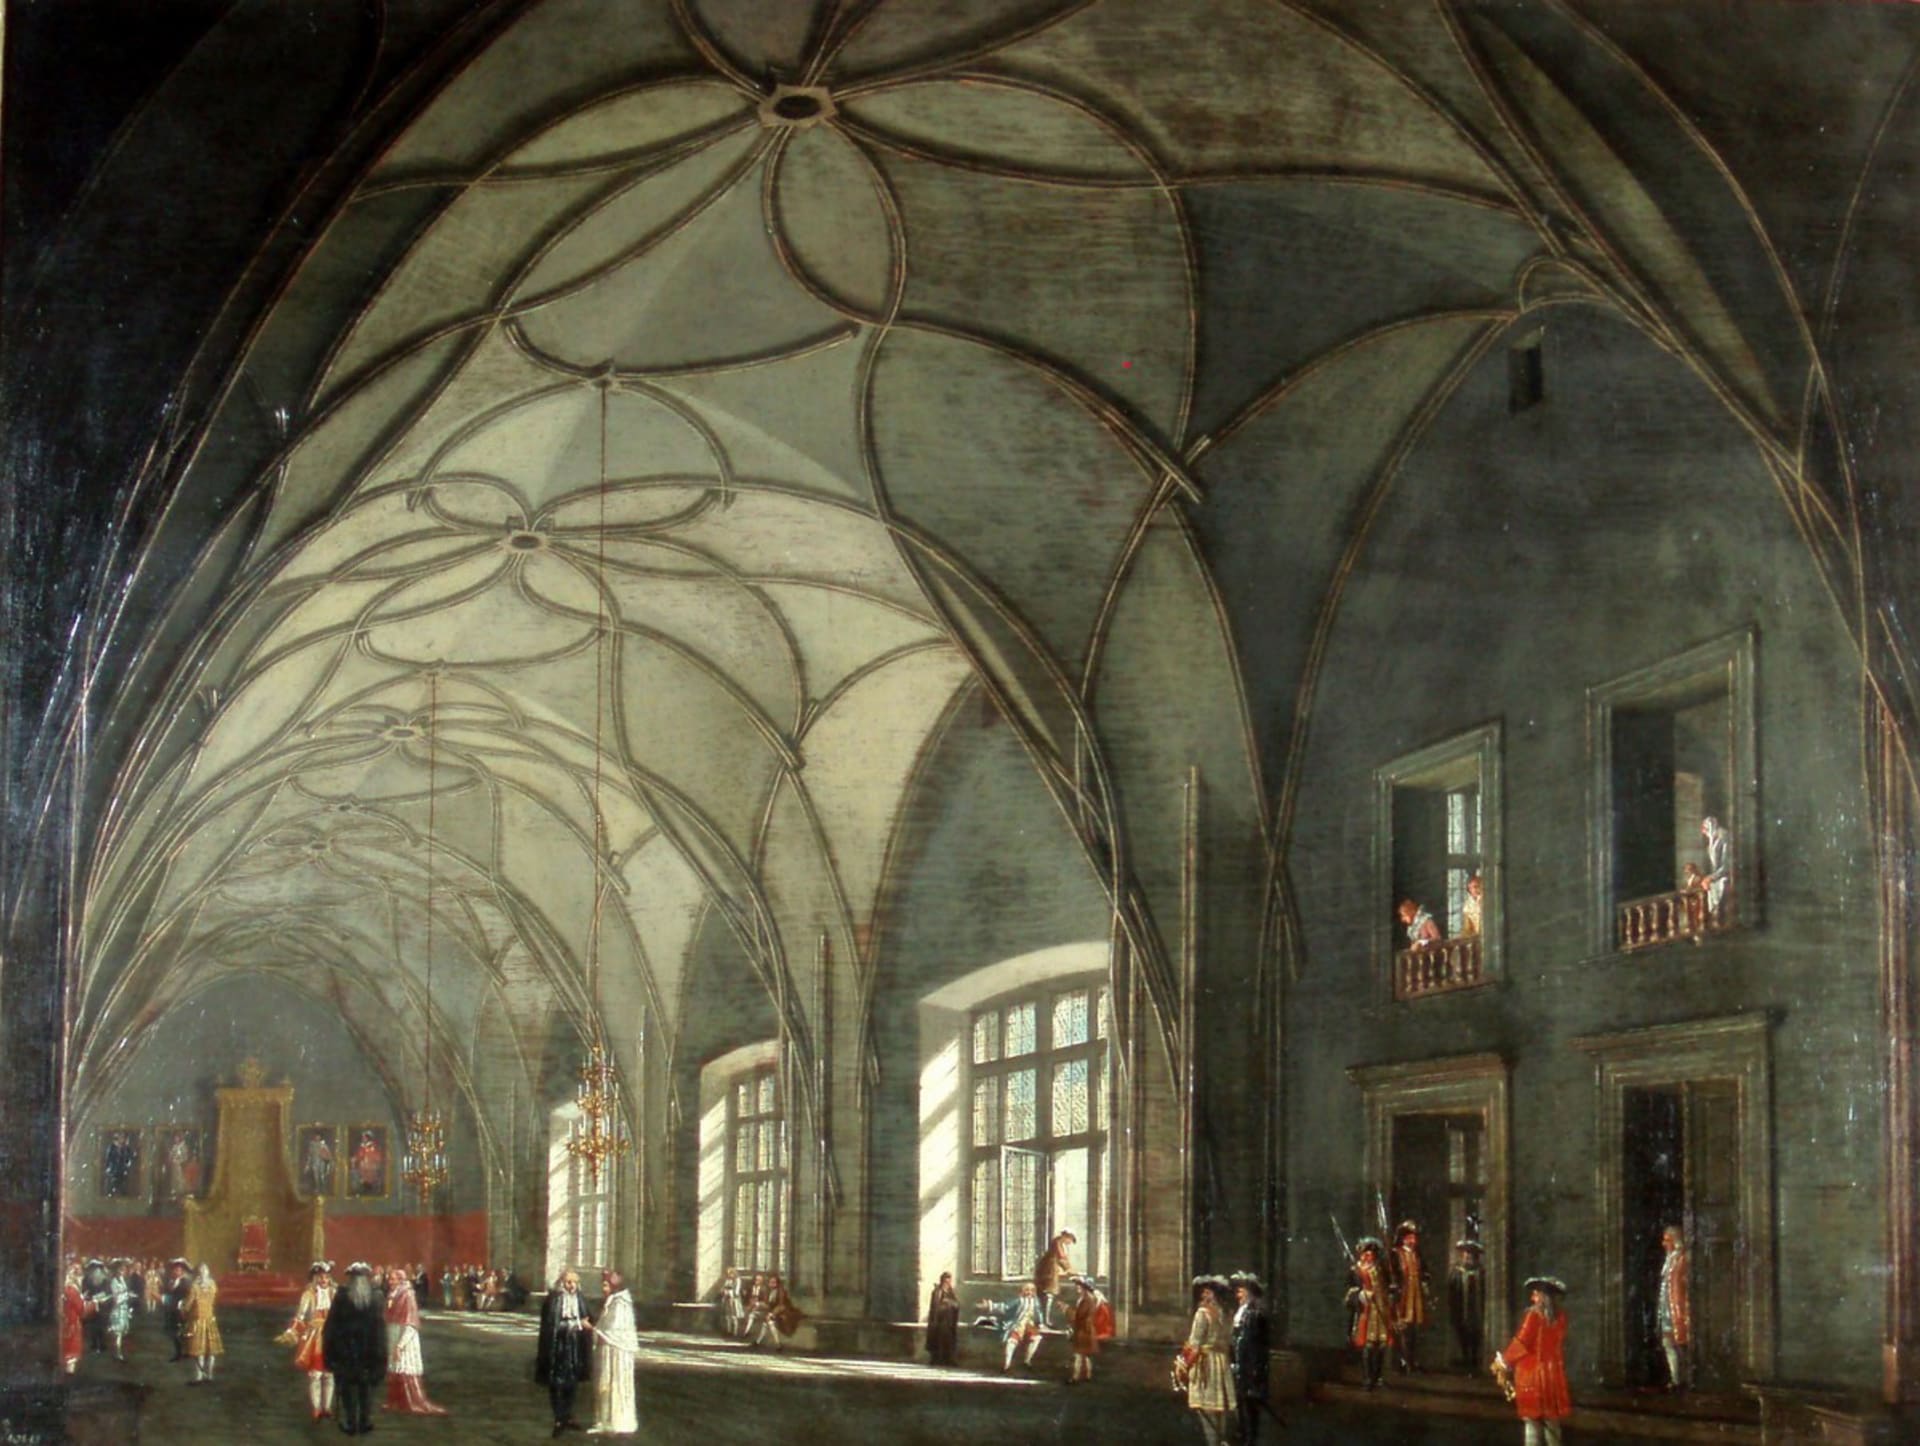 Historická podoba Vladislavského sálu Pražského hradu, nynějšího místa udílení státních vyznamenání